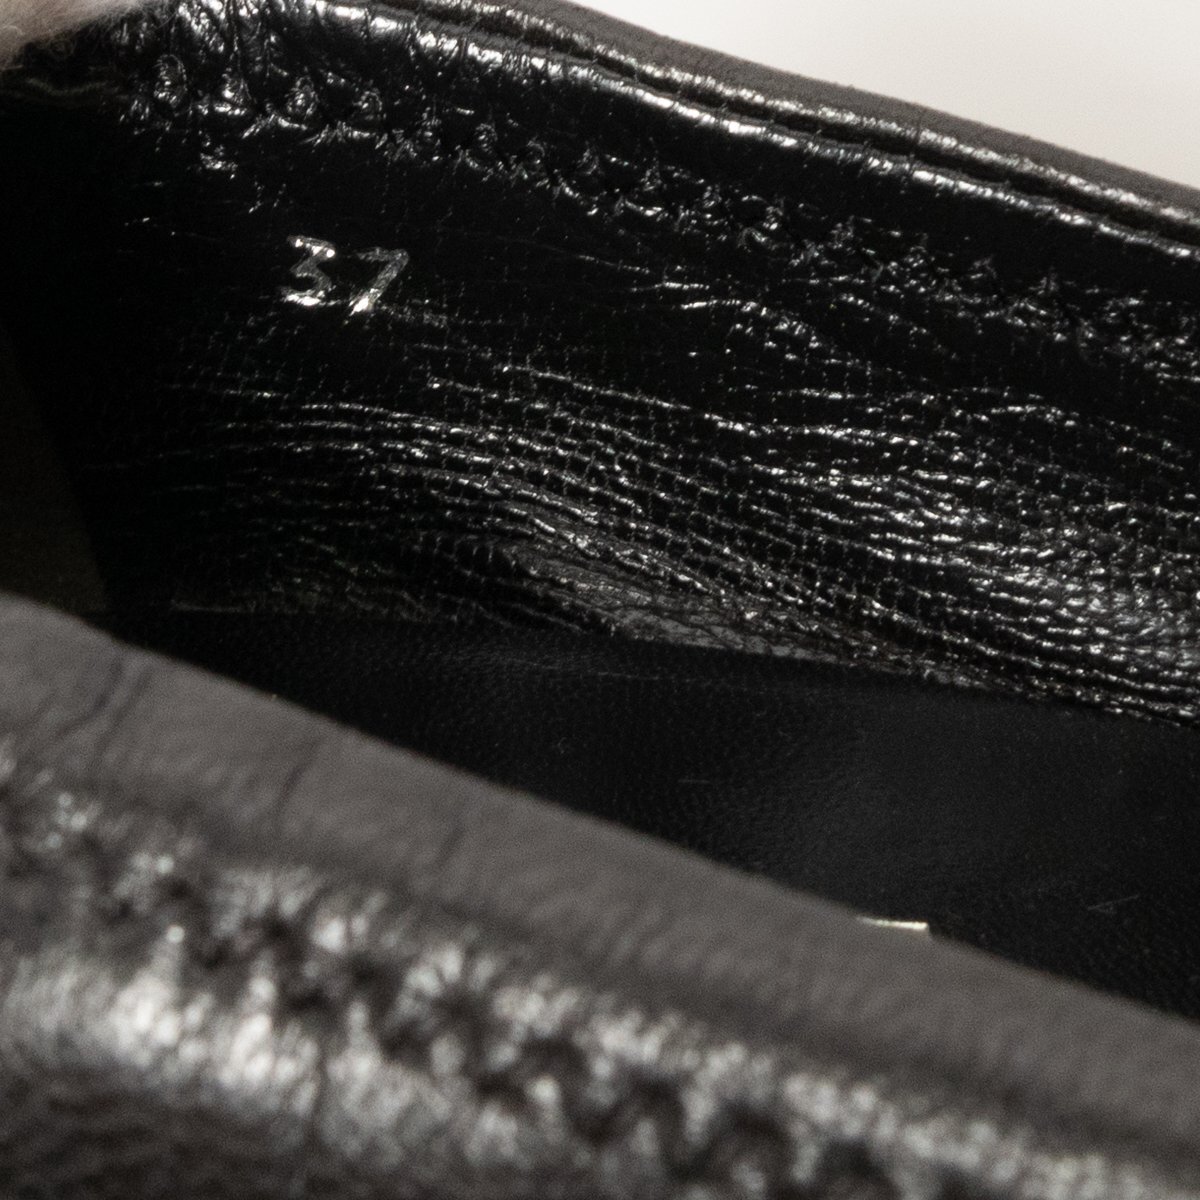 【1円スタート】PRADA プラダ イタリア製 パンプス シューズ 婦人靴 ギャザーデザイン プレーントゥ ブラック 黒 レザー 37 3.5cmヒール_画像10